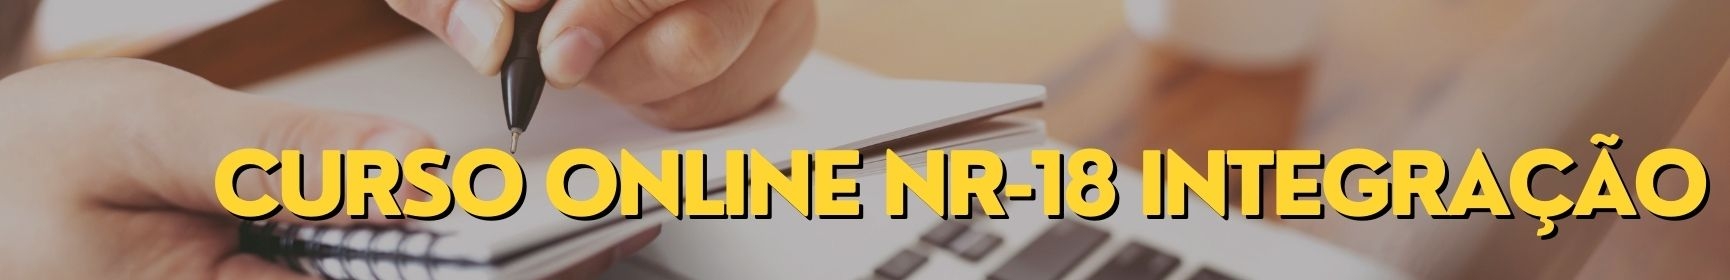 Curso Online NR-18 Integração Curso a Distancia para Empresas Curso Online de Operador de Maquina